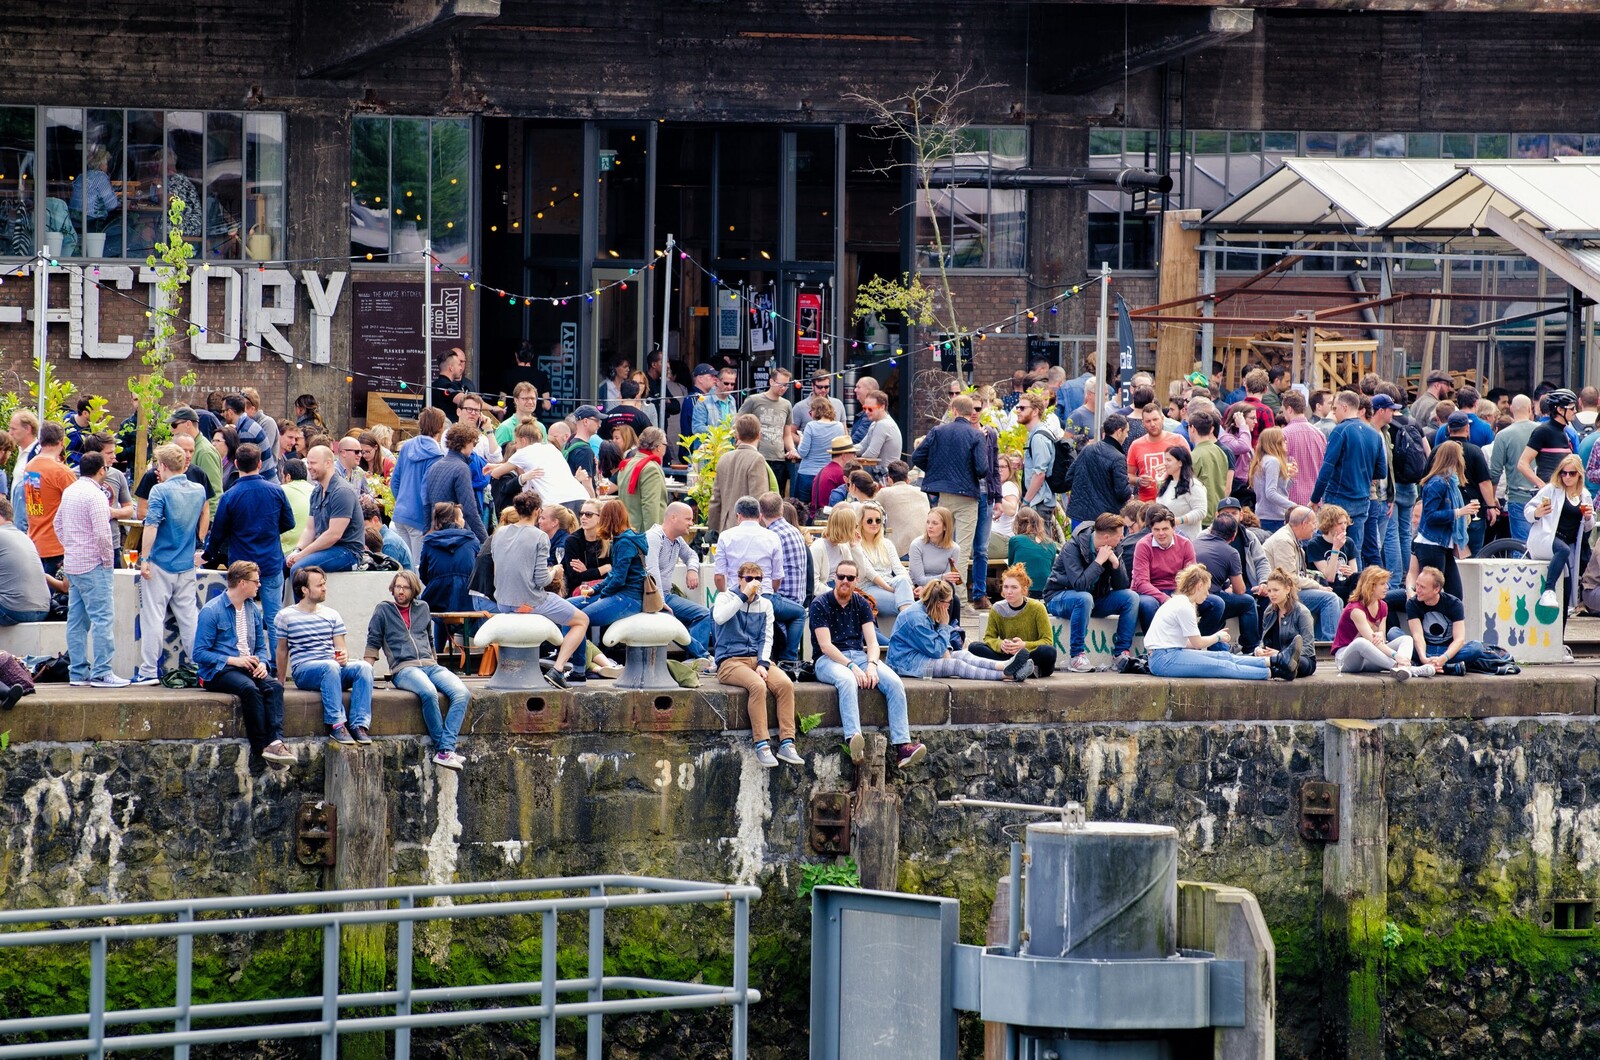 Kaapse Brouwers bierfestival Rotterdam